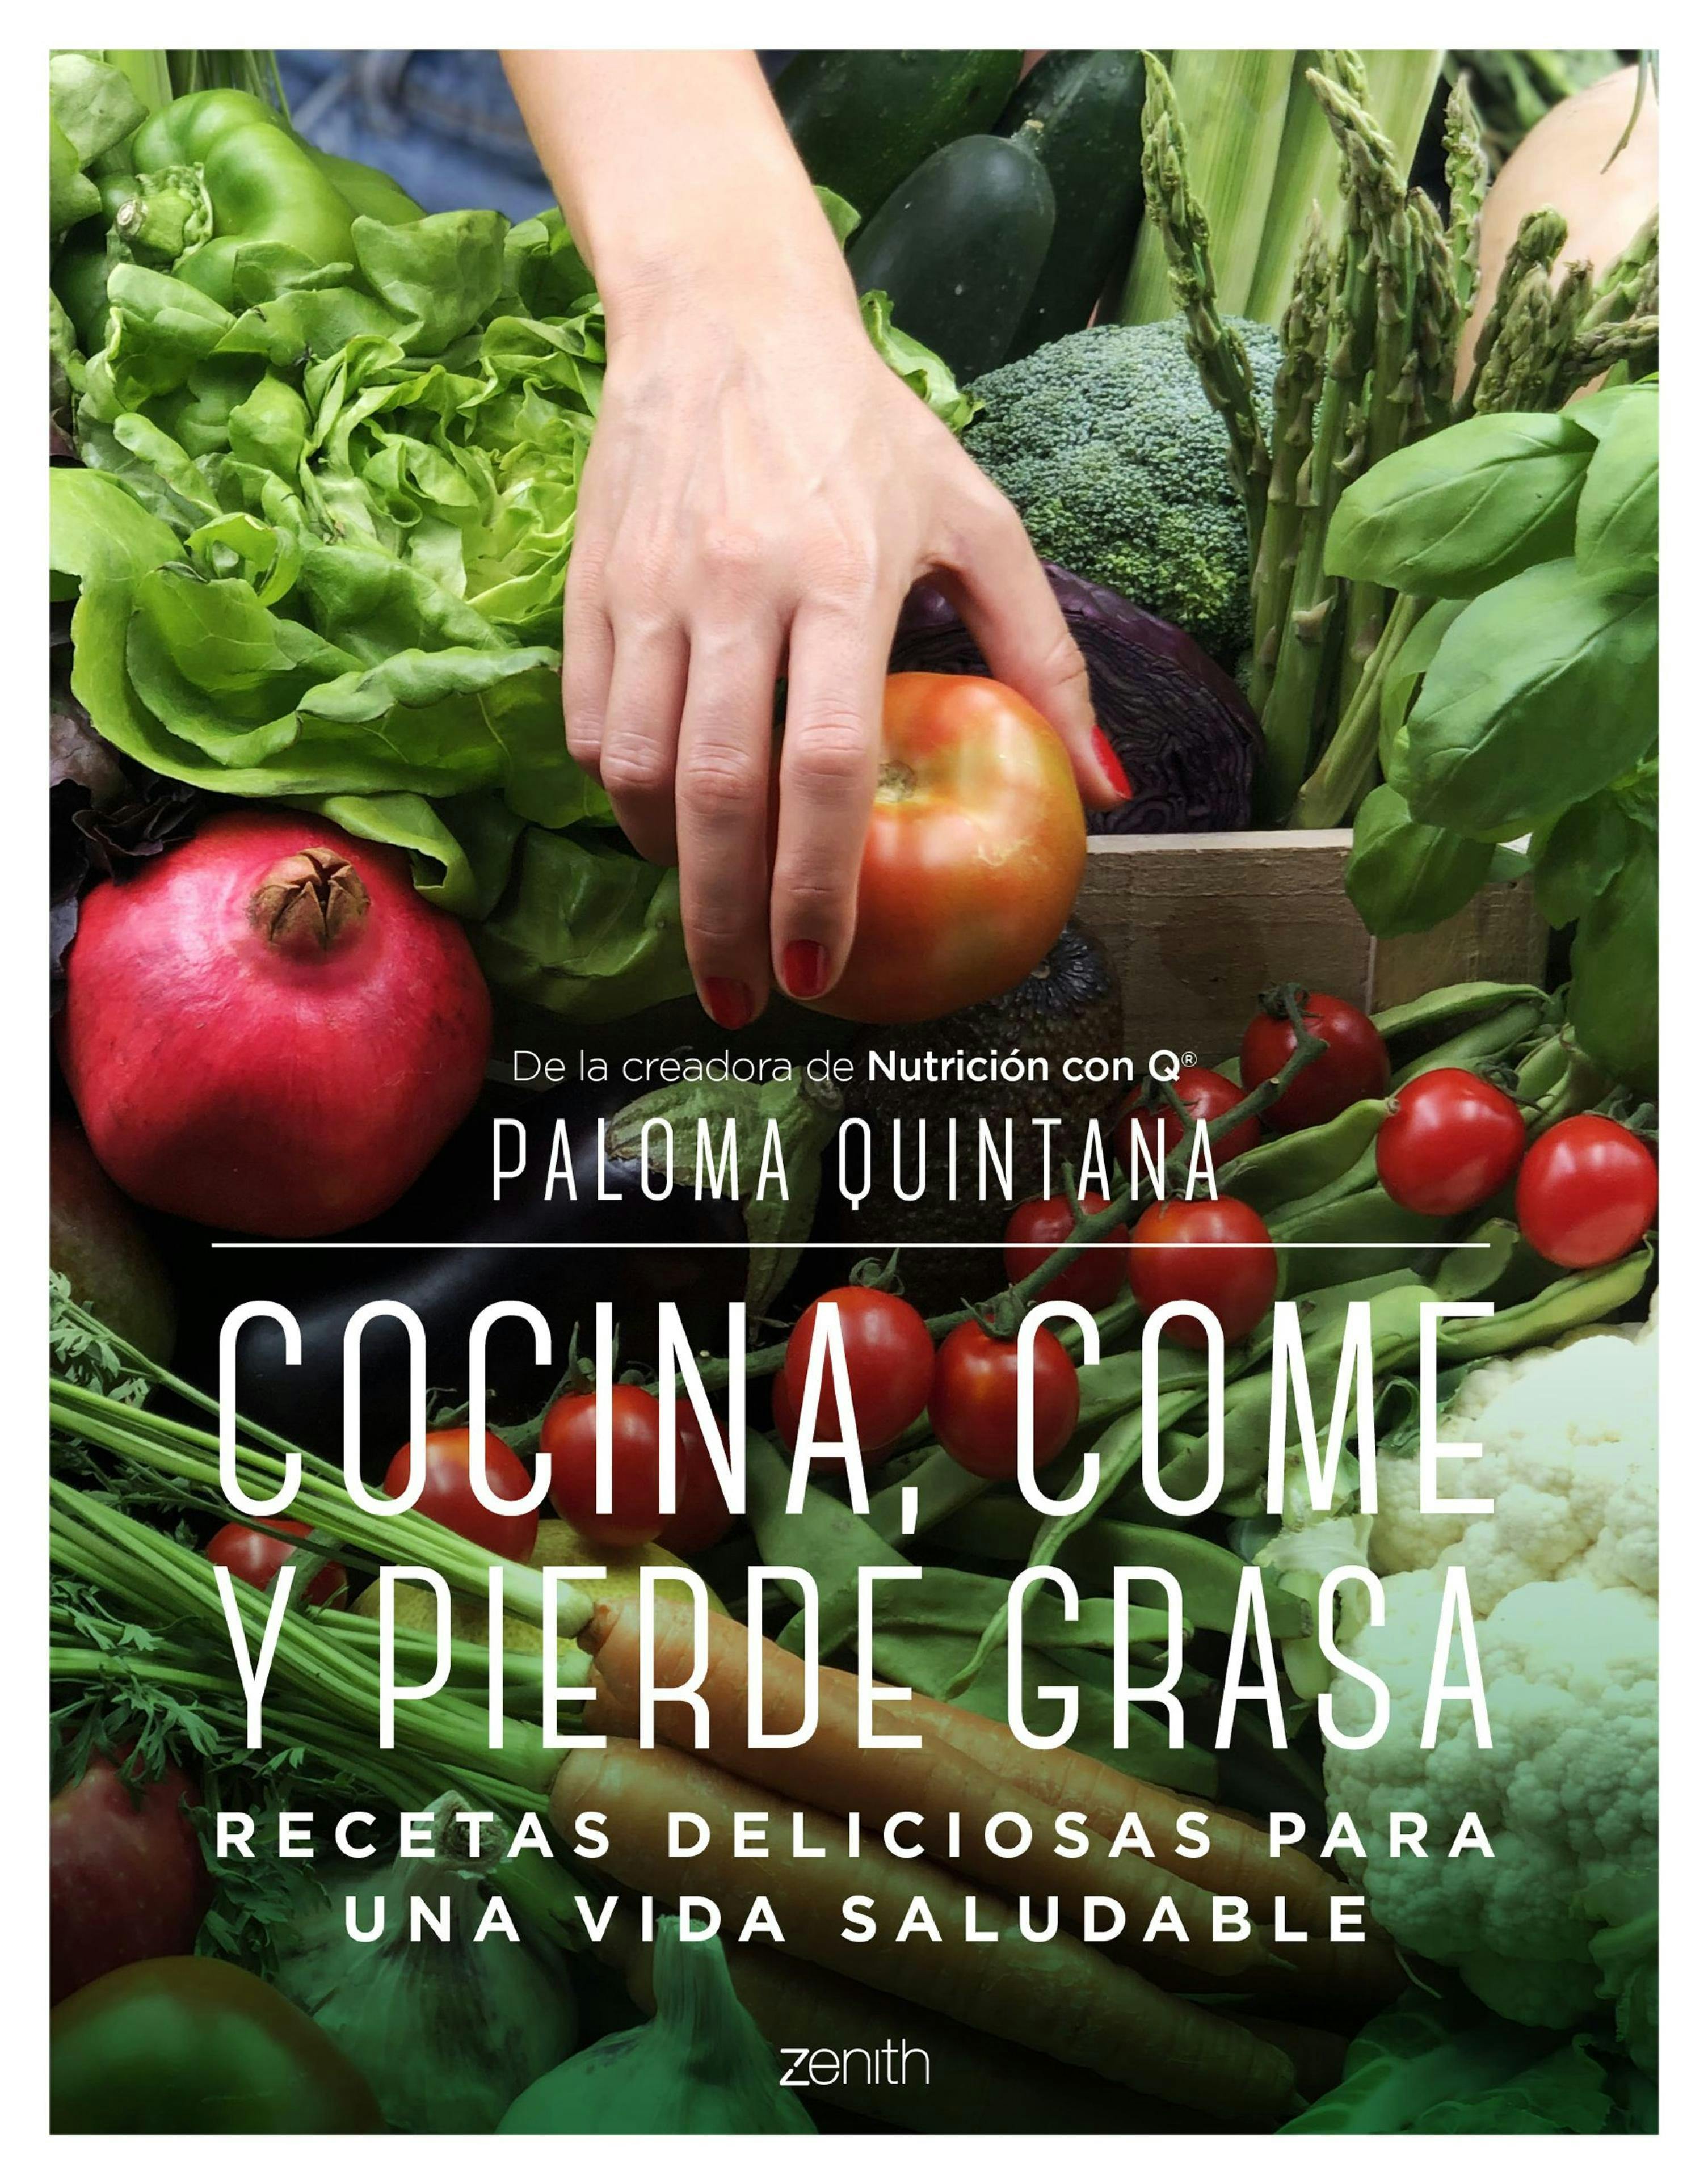 Cocina, come y pierde grasa: Recetas deliciosas para una vida saludable - Paloma Quintana